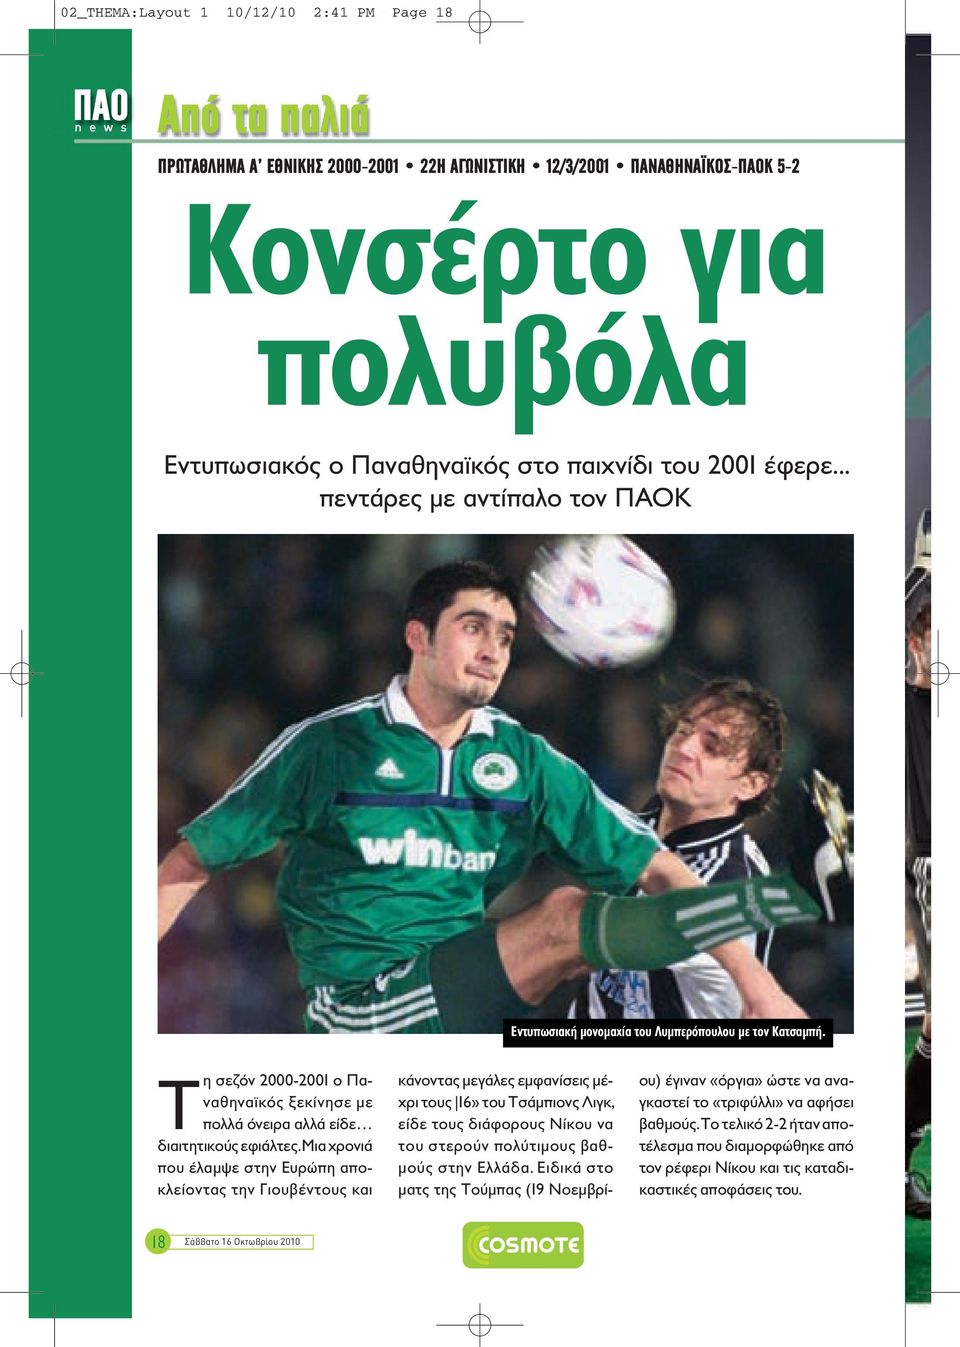 Τη σεζόν 2000-2001 ο Παναθηναϊκός ξεκίνησε με πολλά όνειρα αλλά είδε διαιτητικούς εφιάλτες.